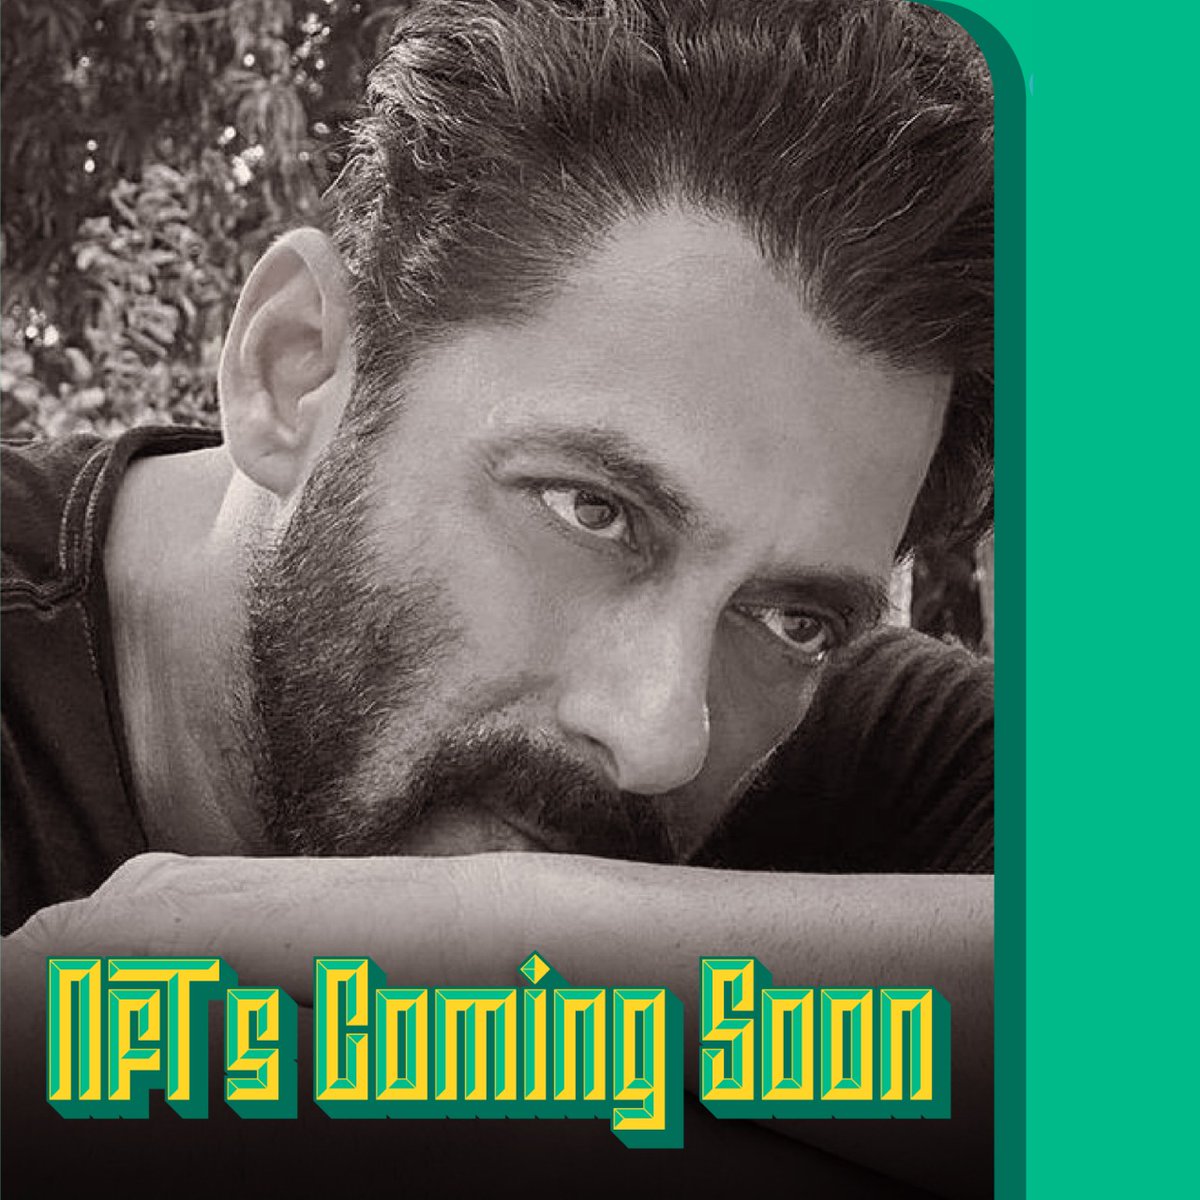 Khabar suna aapne? Salman Khan Static NFTs coming on @bollycoin. Stay tuned, bhai log! bollycoin.com 🌟#BollyCoin #NFTs #ComingSoon